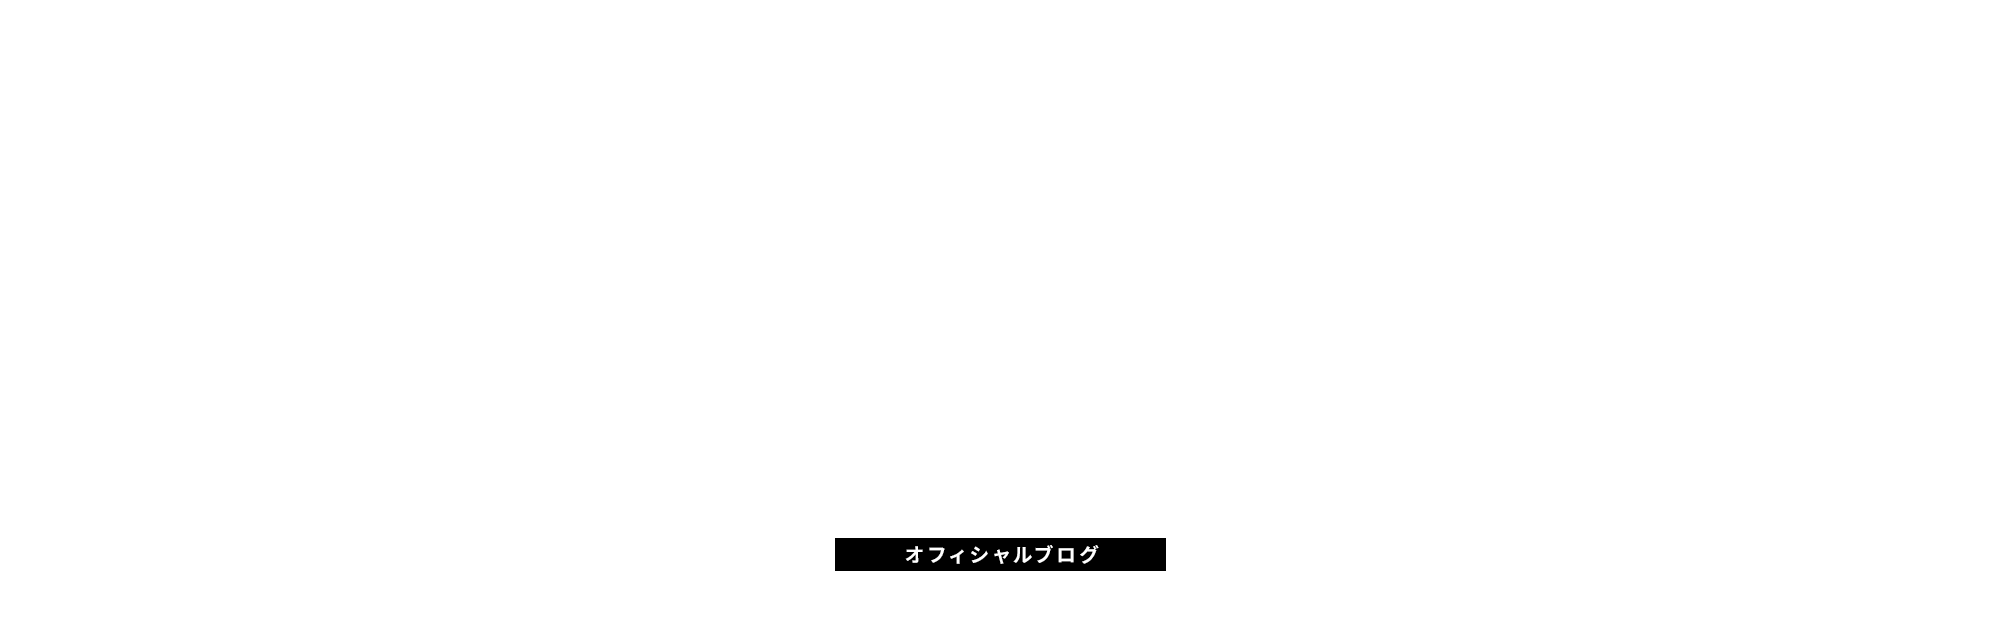 オフィシャルブログ